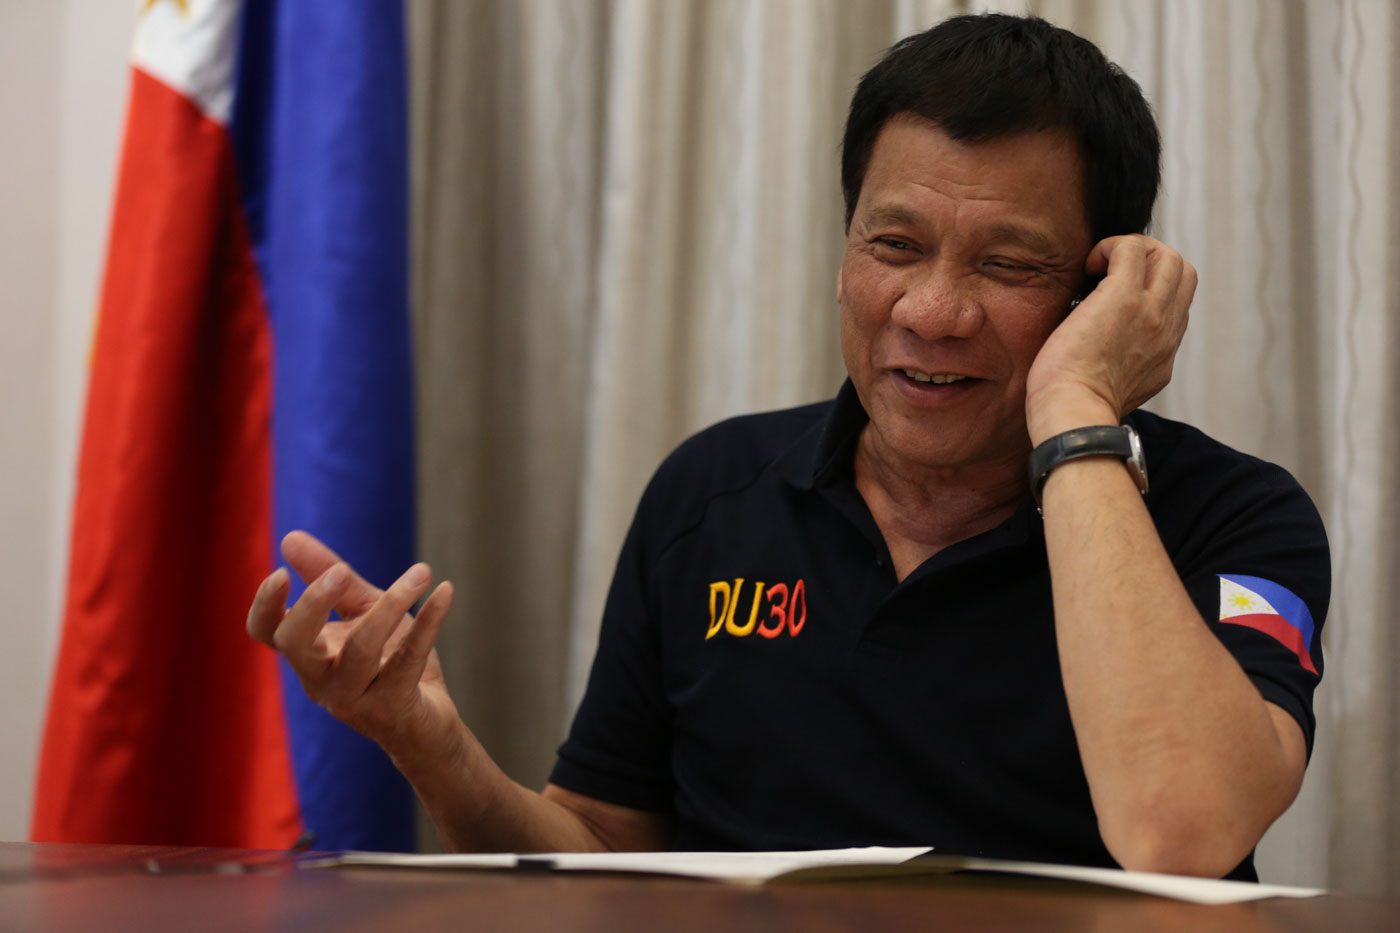 ‘Rapport’ between Duterte, Trump signals ‘improving’ PH-US ties